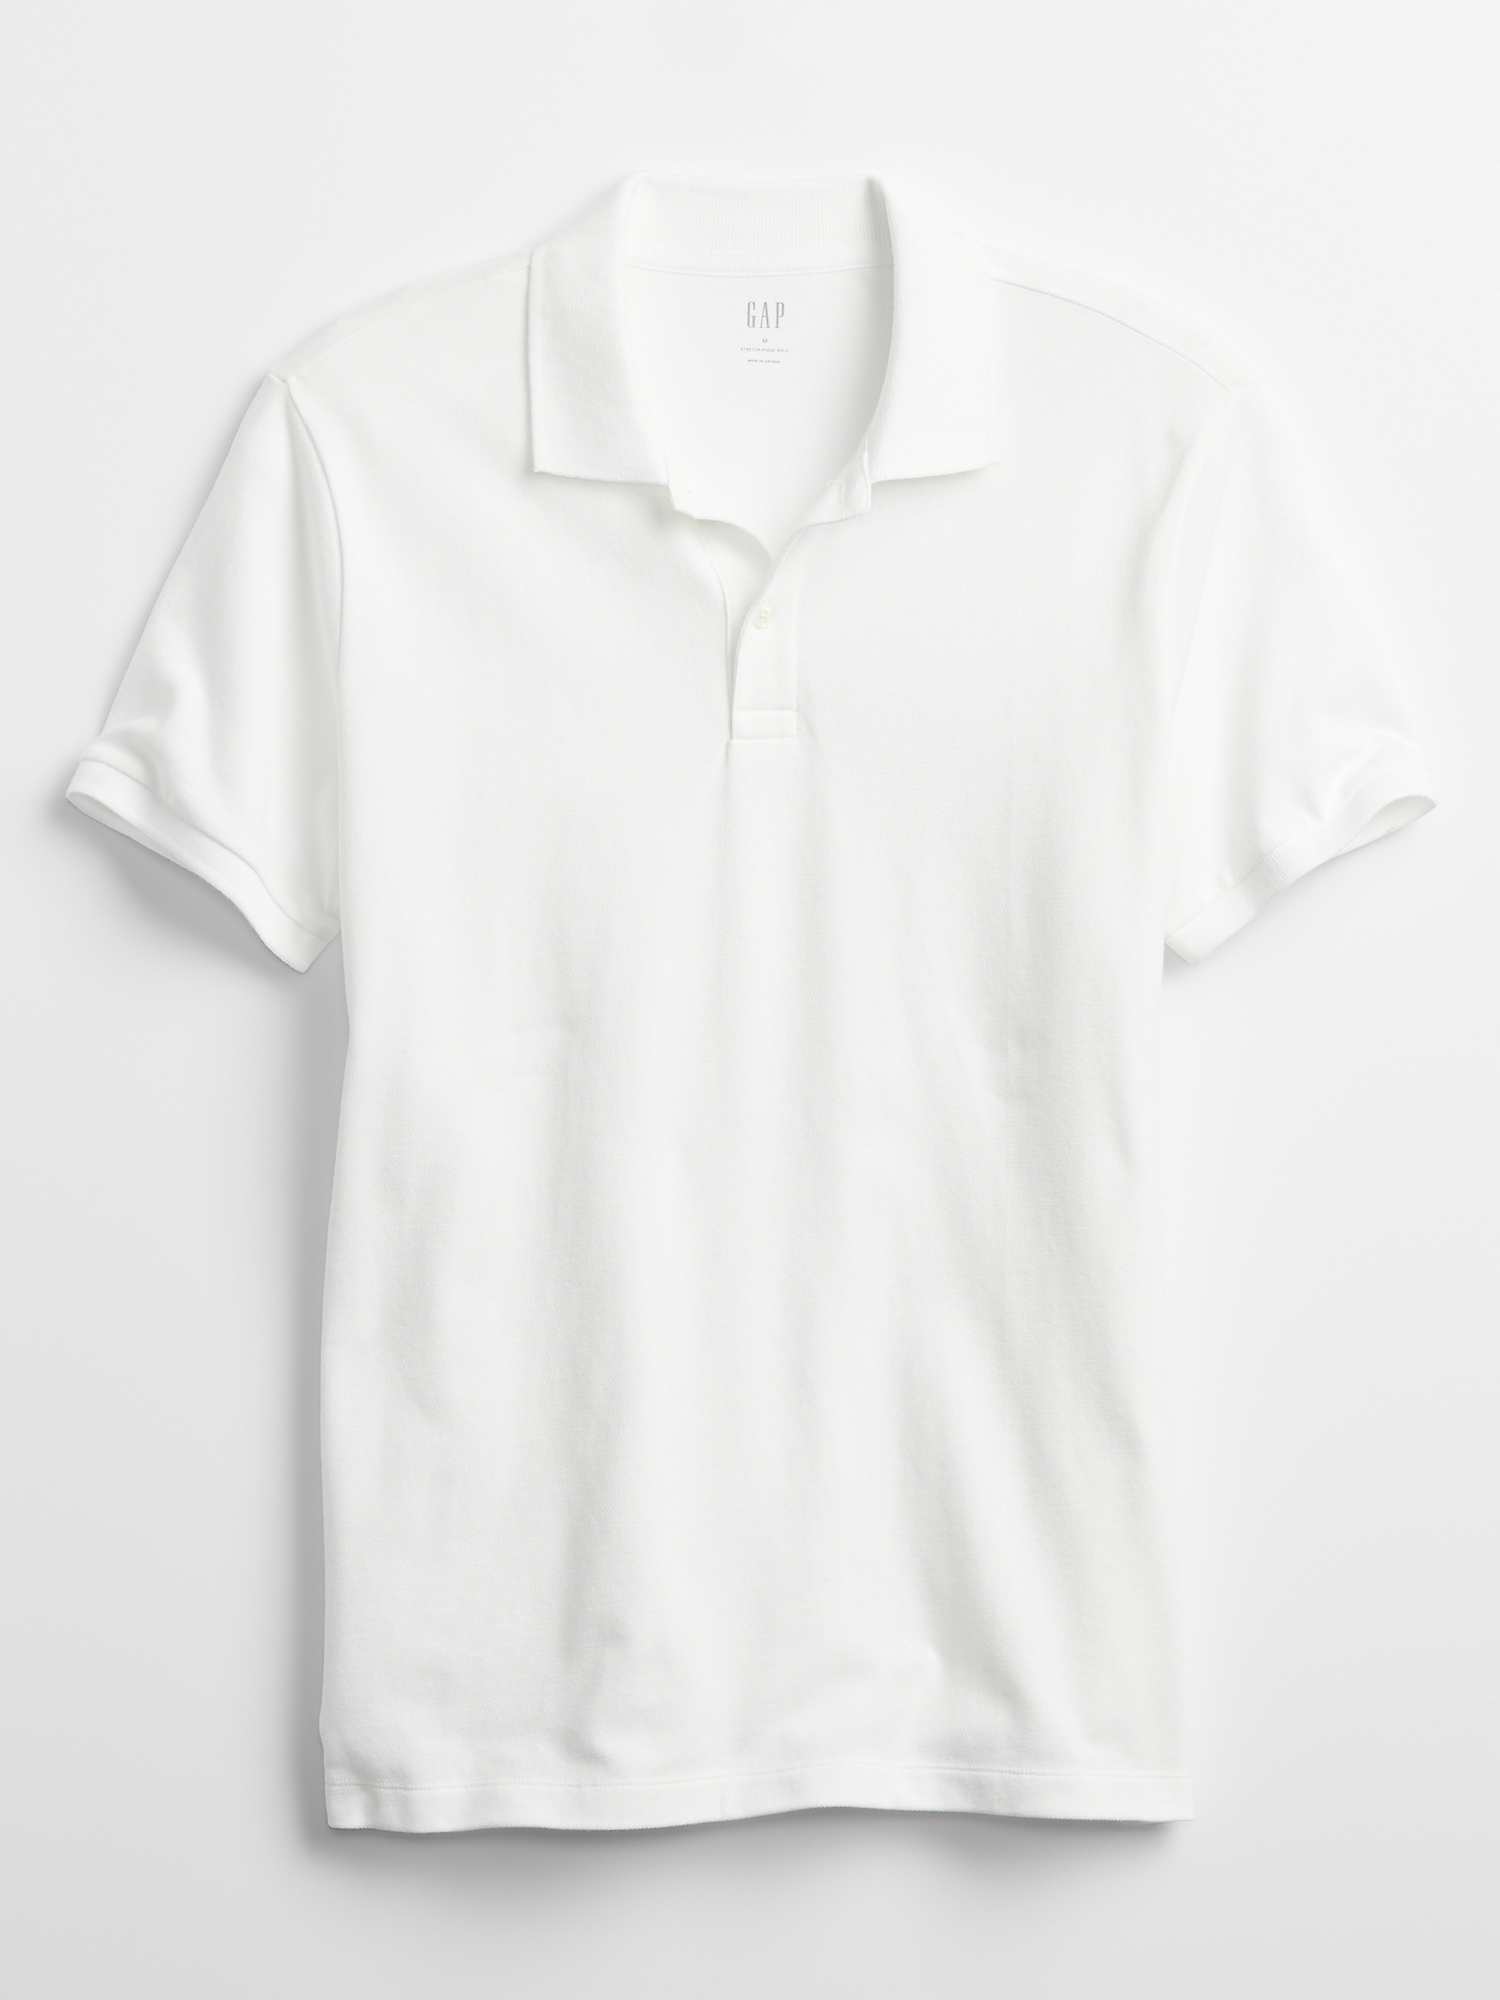 Stretch Pique Polo Shirt | Gap Factory